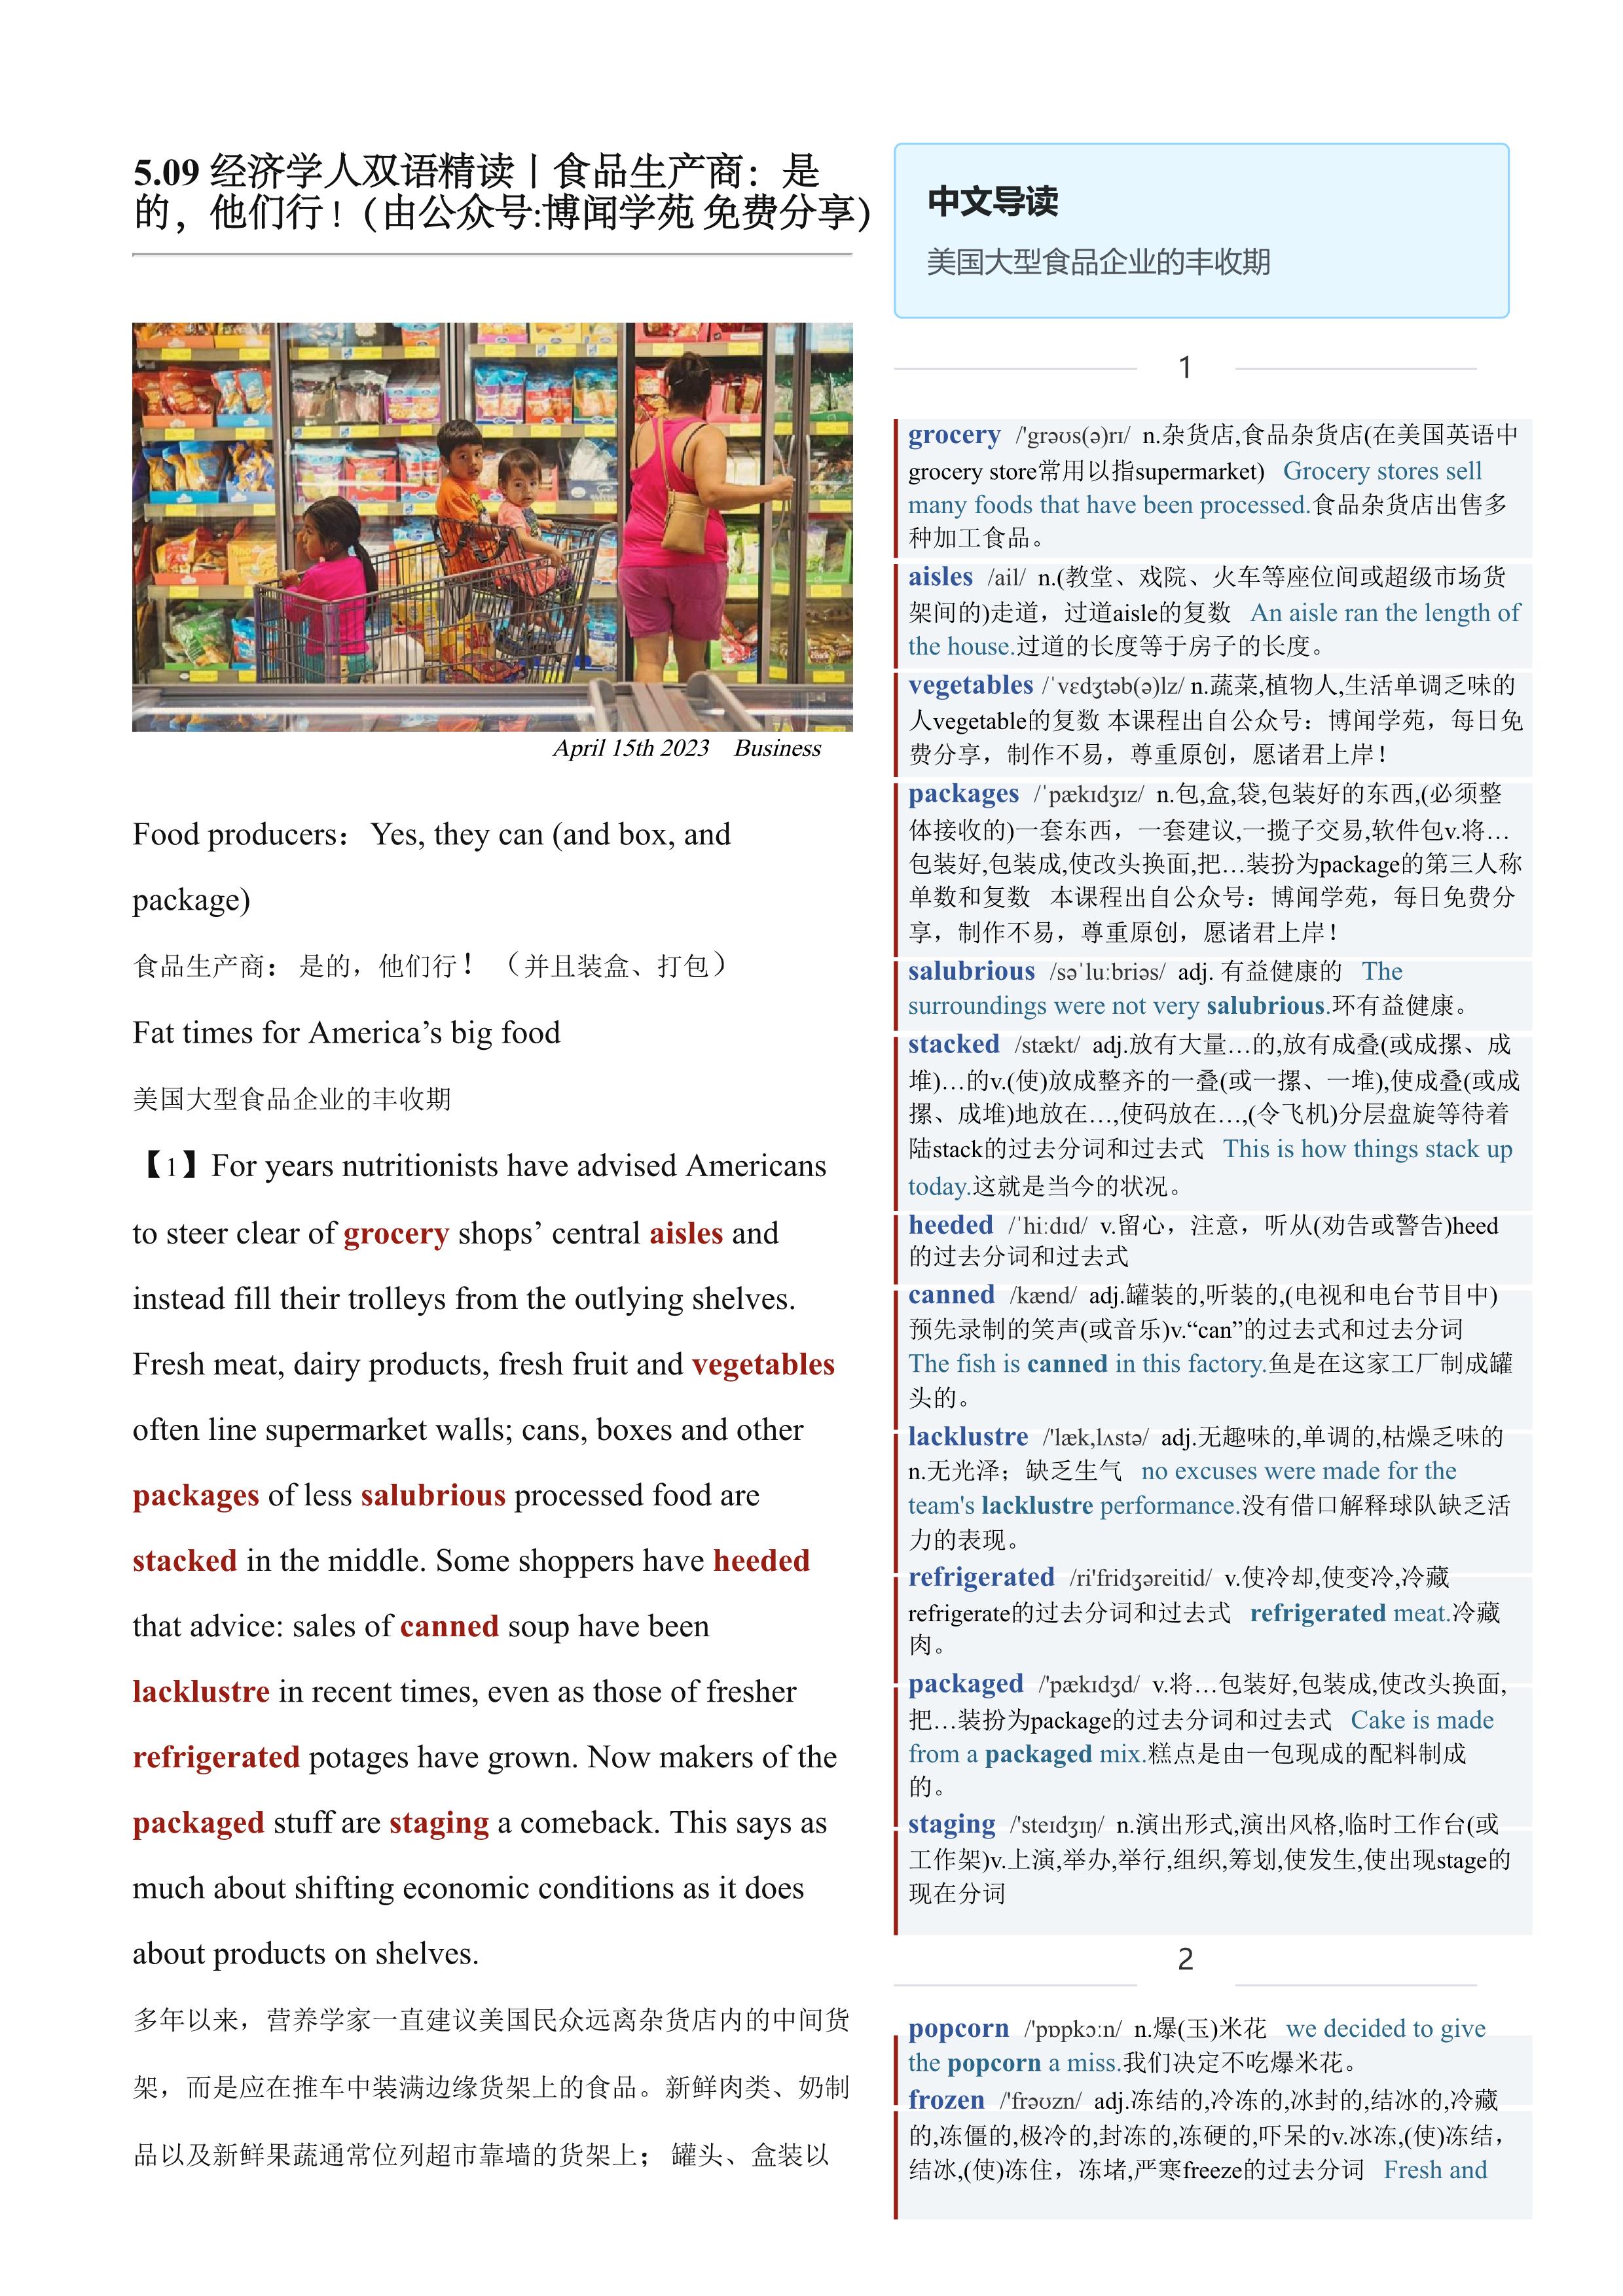 2023.05.09 经济学人双语精读丨食品生产商：是的，他们行！ (.PDF/DOC/MP3)